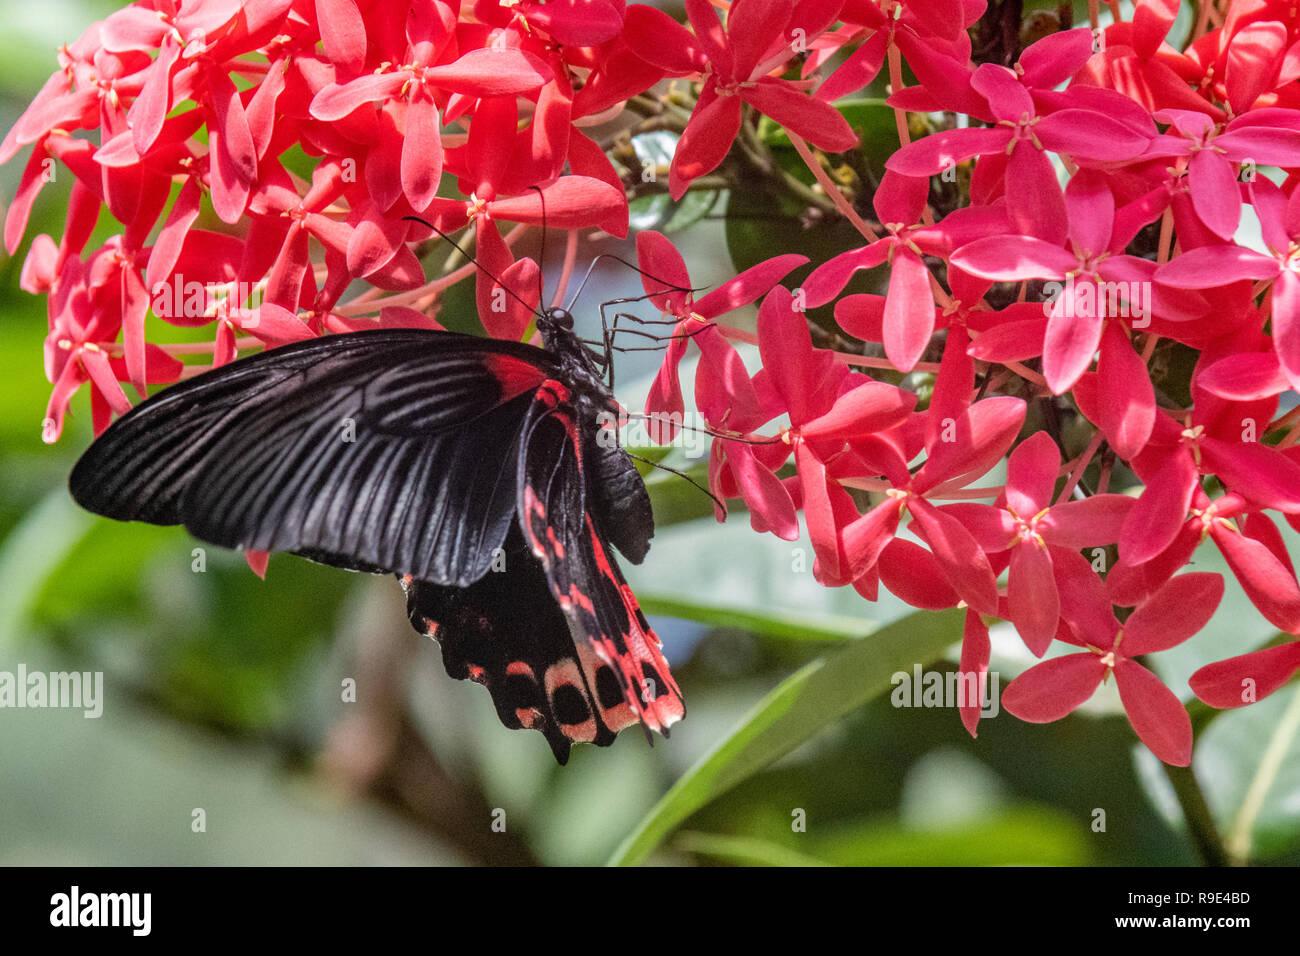 Scarlet coda forcuta - Scarlet Mormone butterfly - Papilio rumanzovia in un giardino delle farfalle - nativa Australiana butterfly Foto Stock